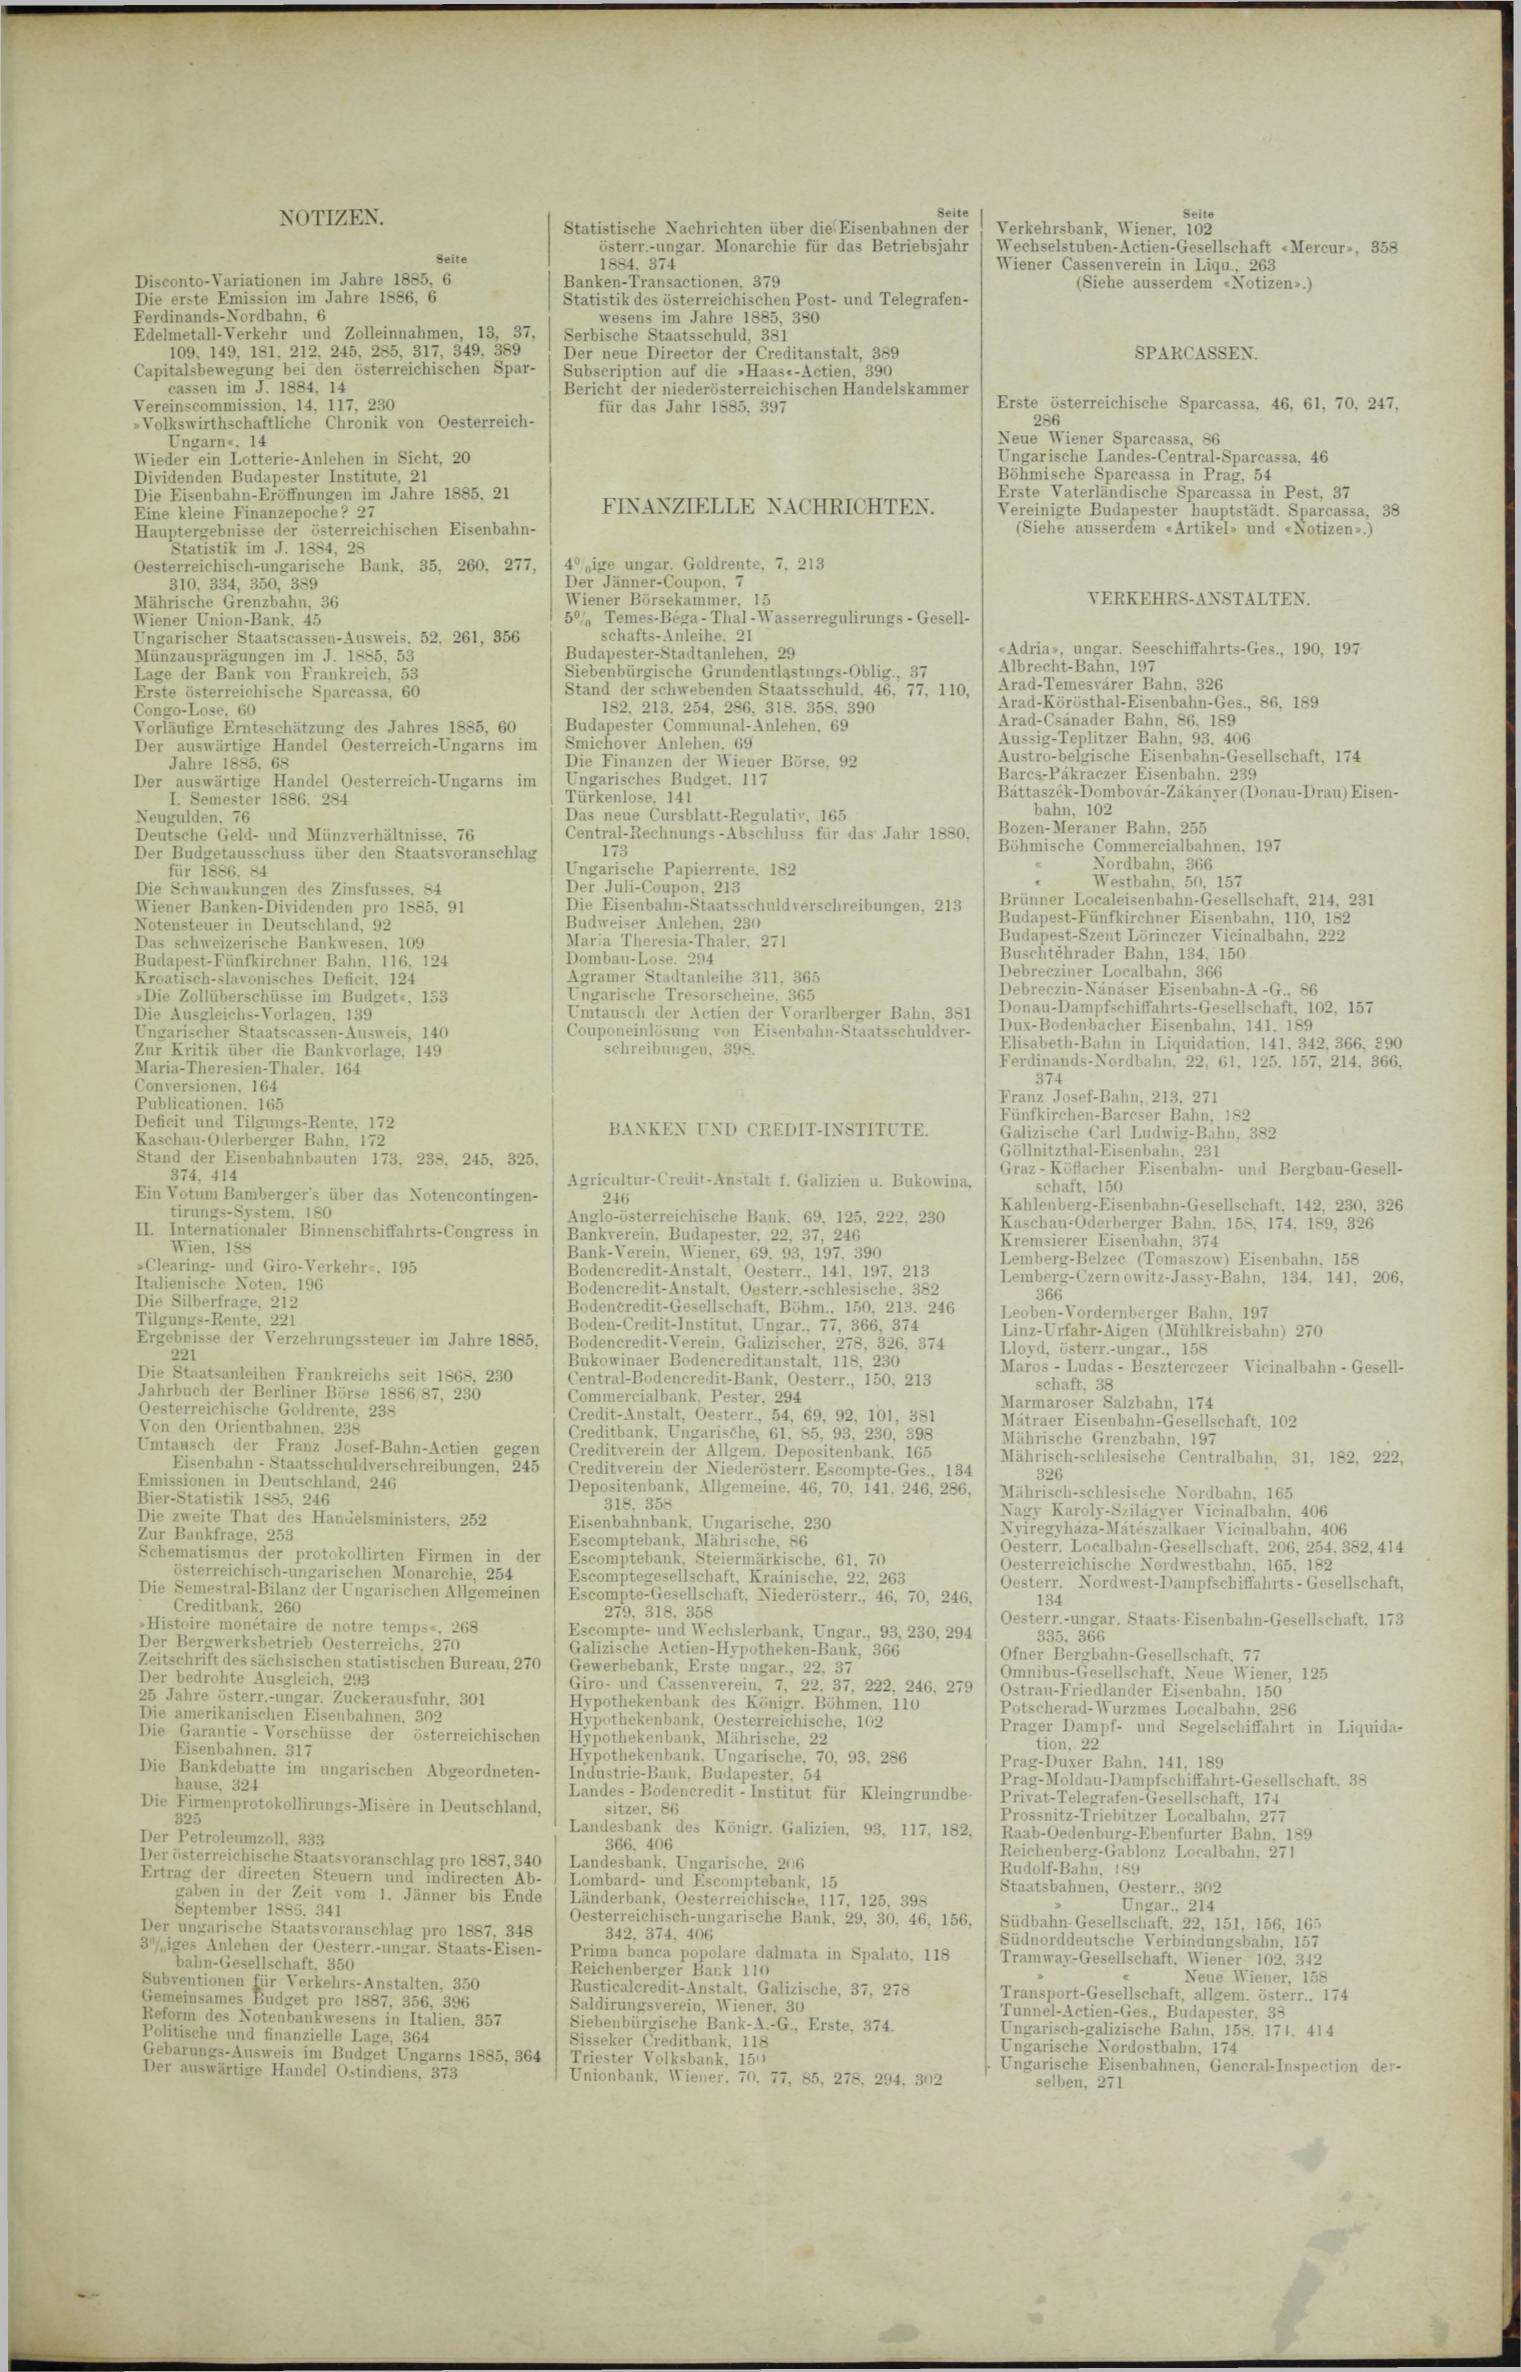 Der Tresor 08.07.1886 - Seite 11